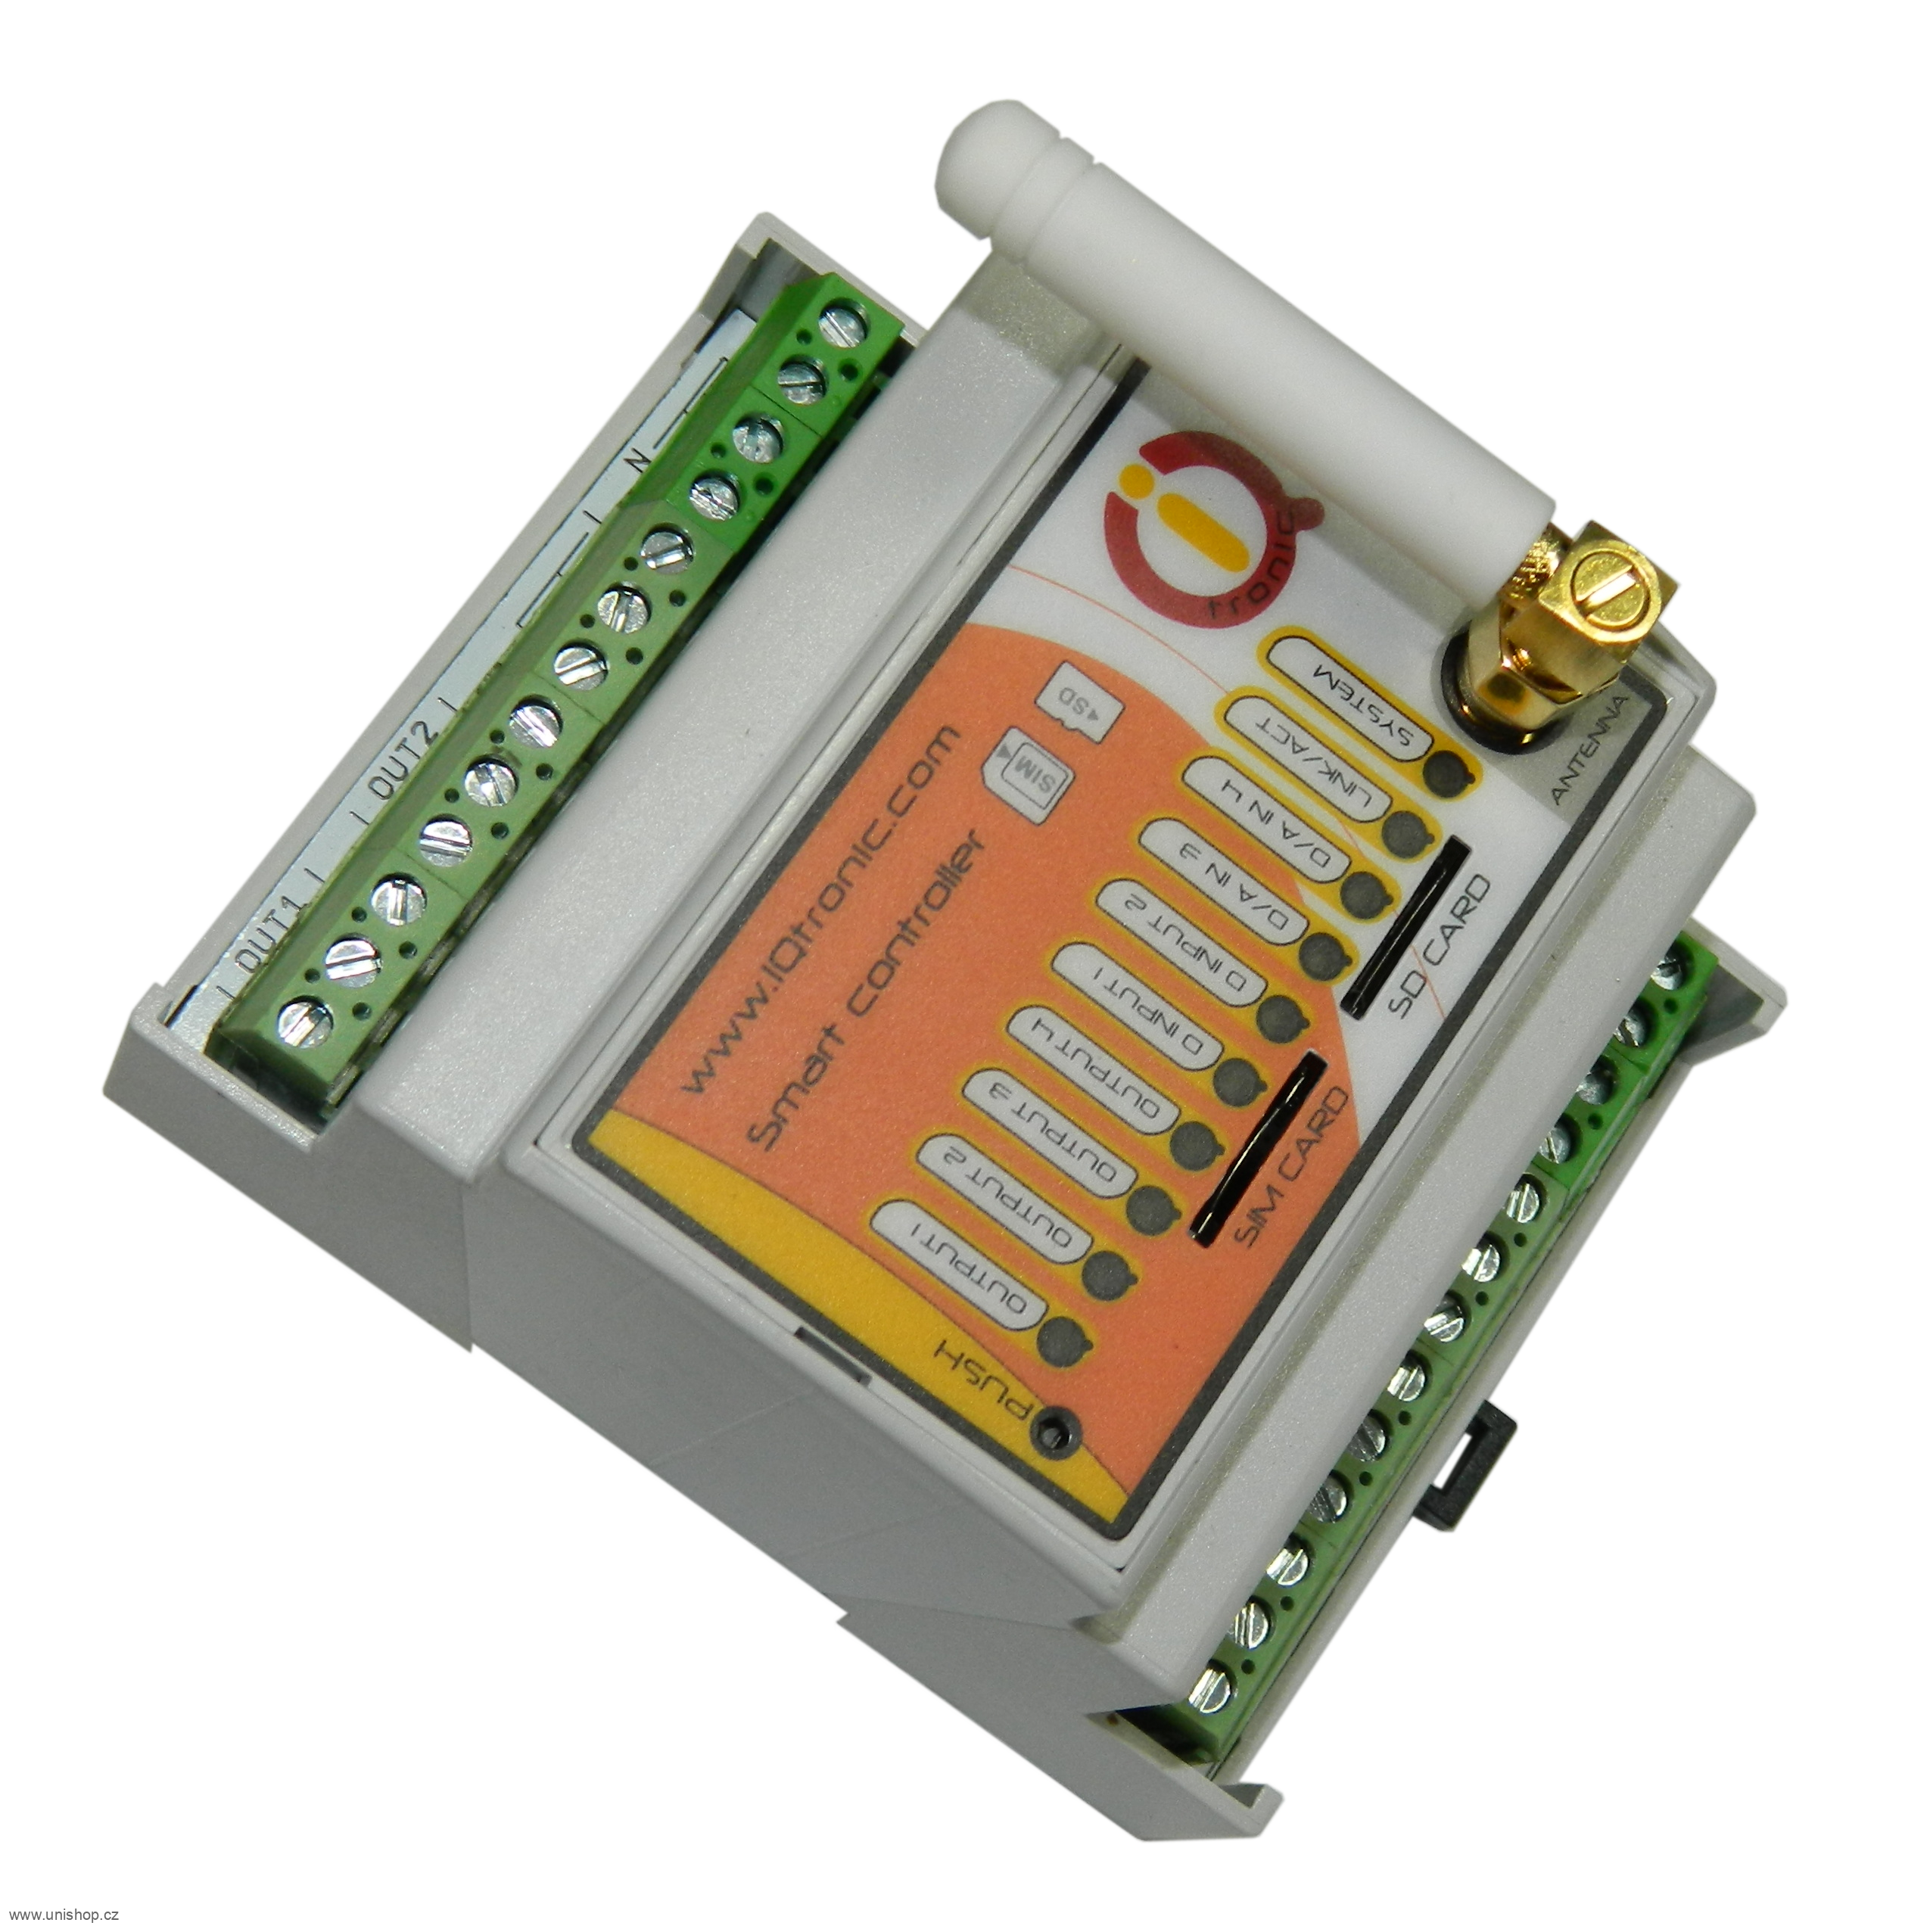 IQTD_GS440 B - GSM kontrolér nové generace